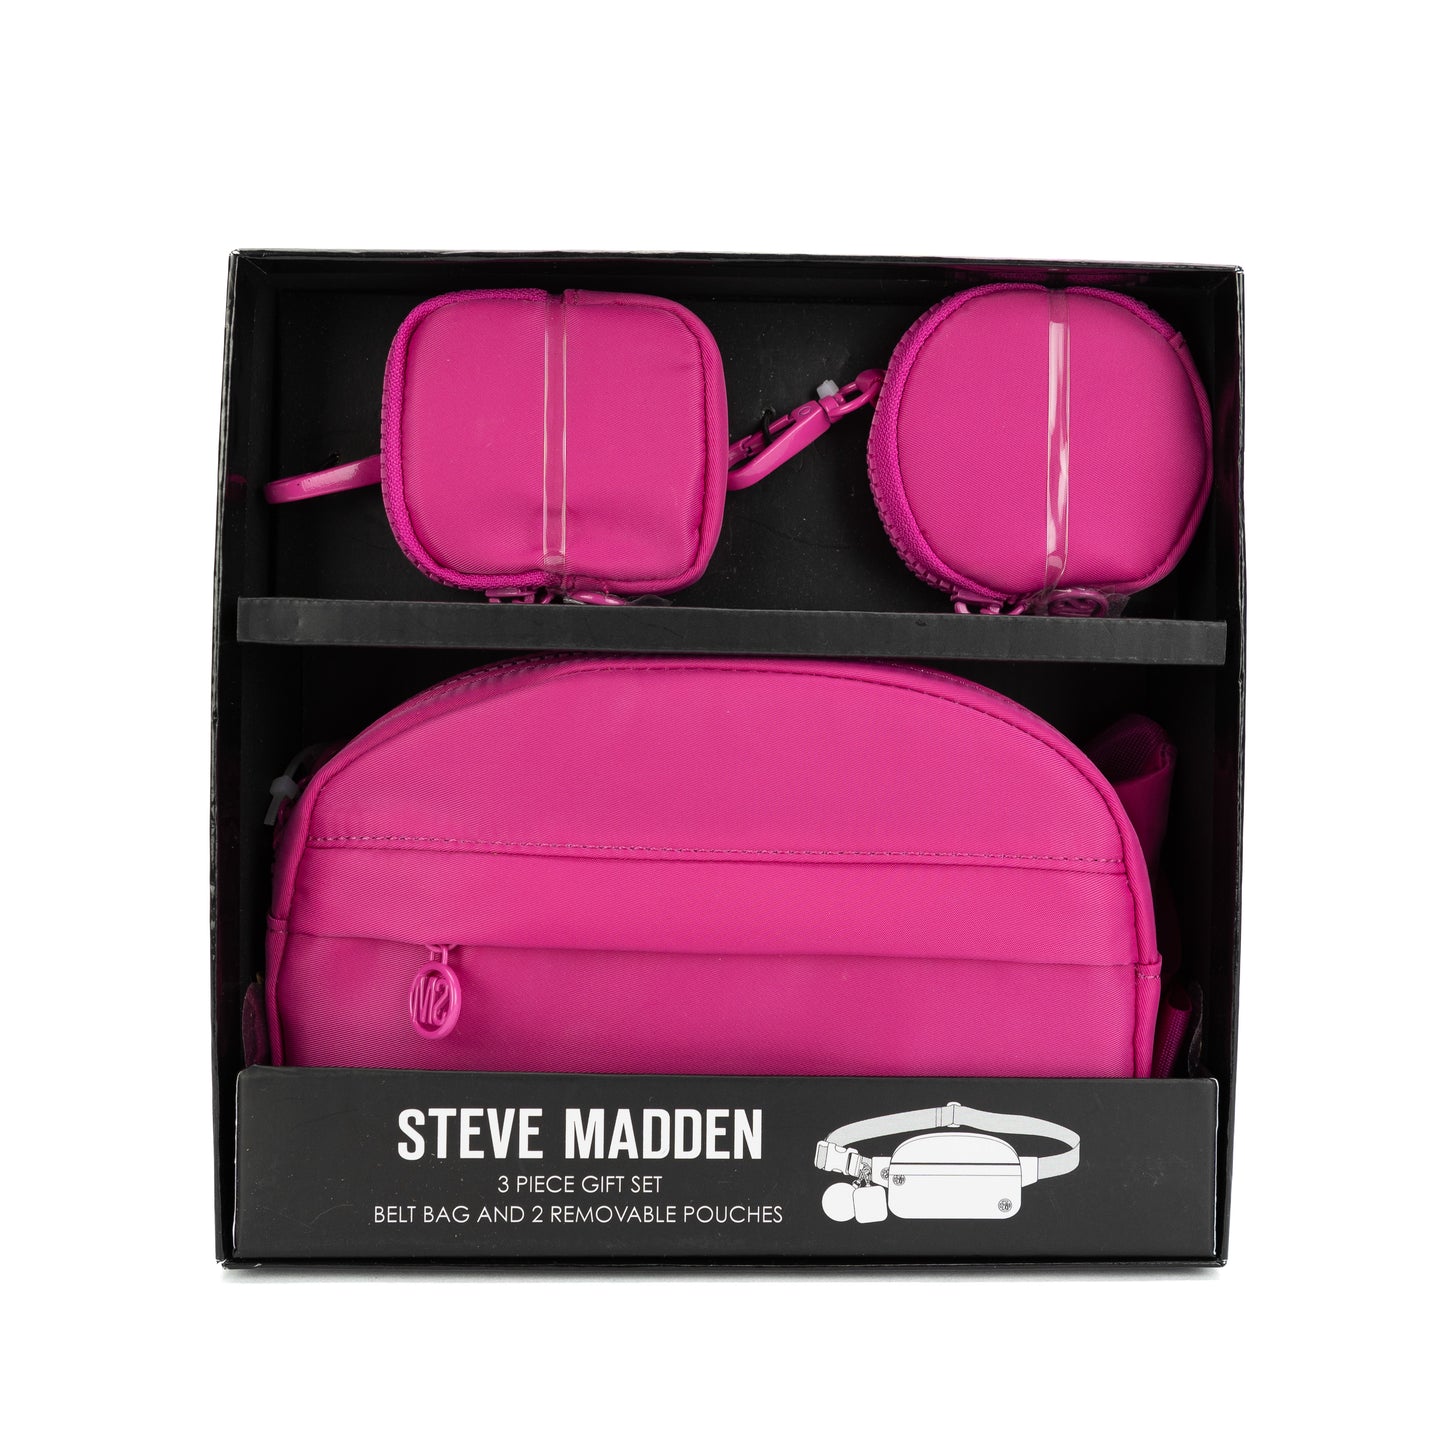 Steve Madden Belt Bag 3 in 1 Gift Set - Pink